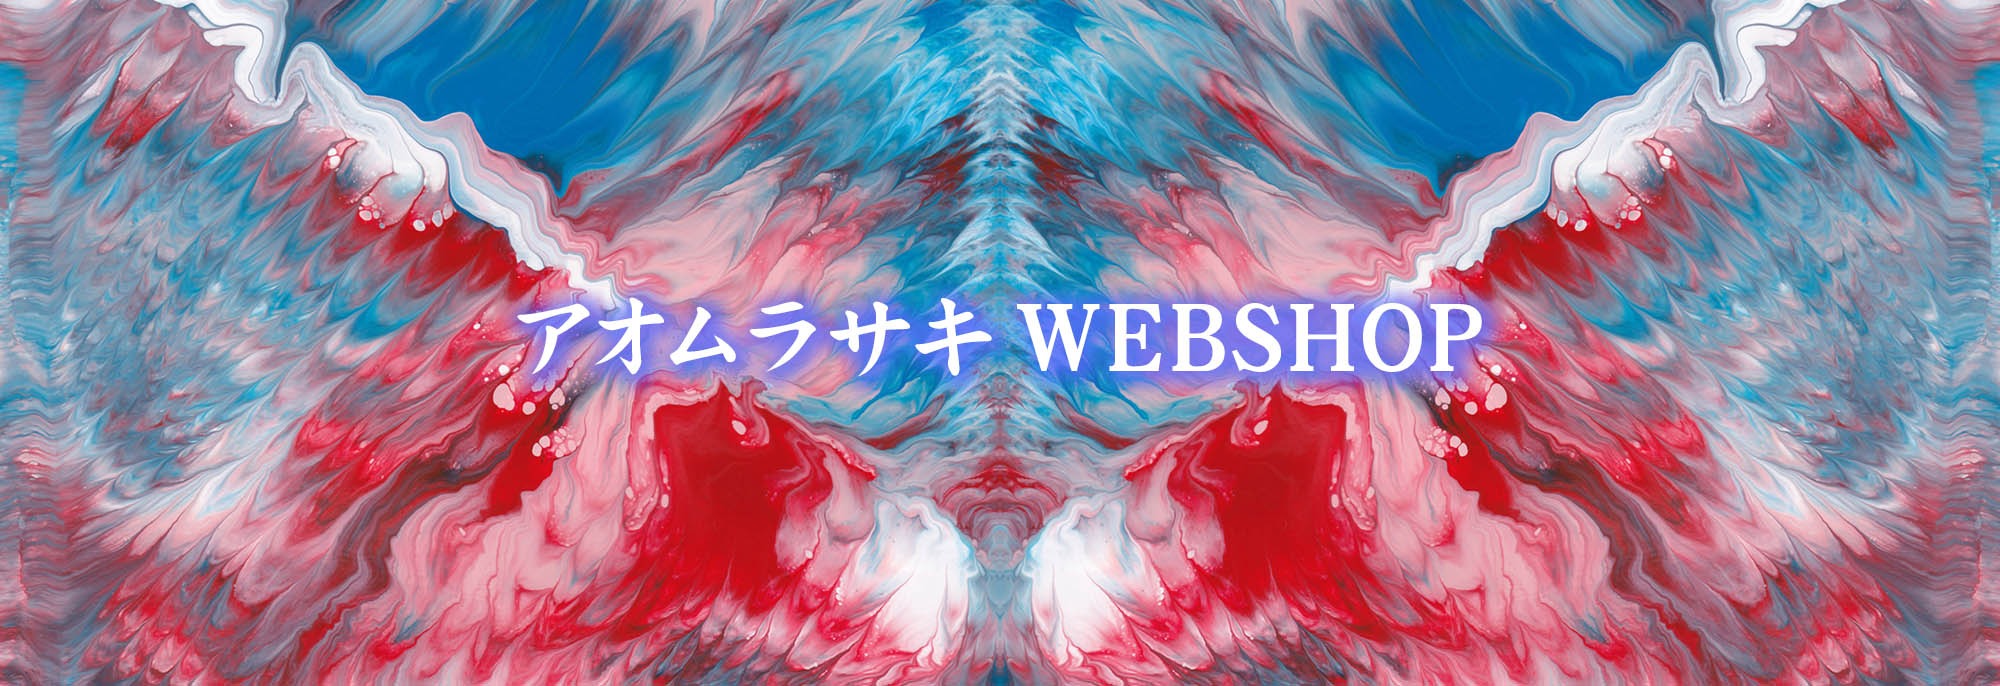 アオムラサキ WebShop